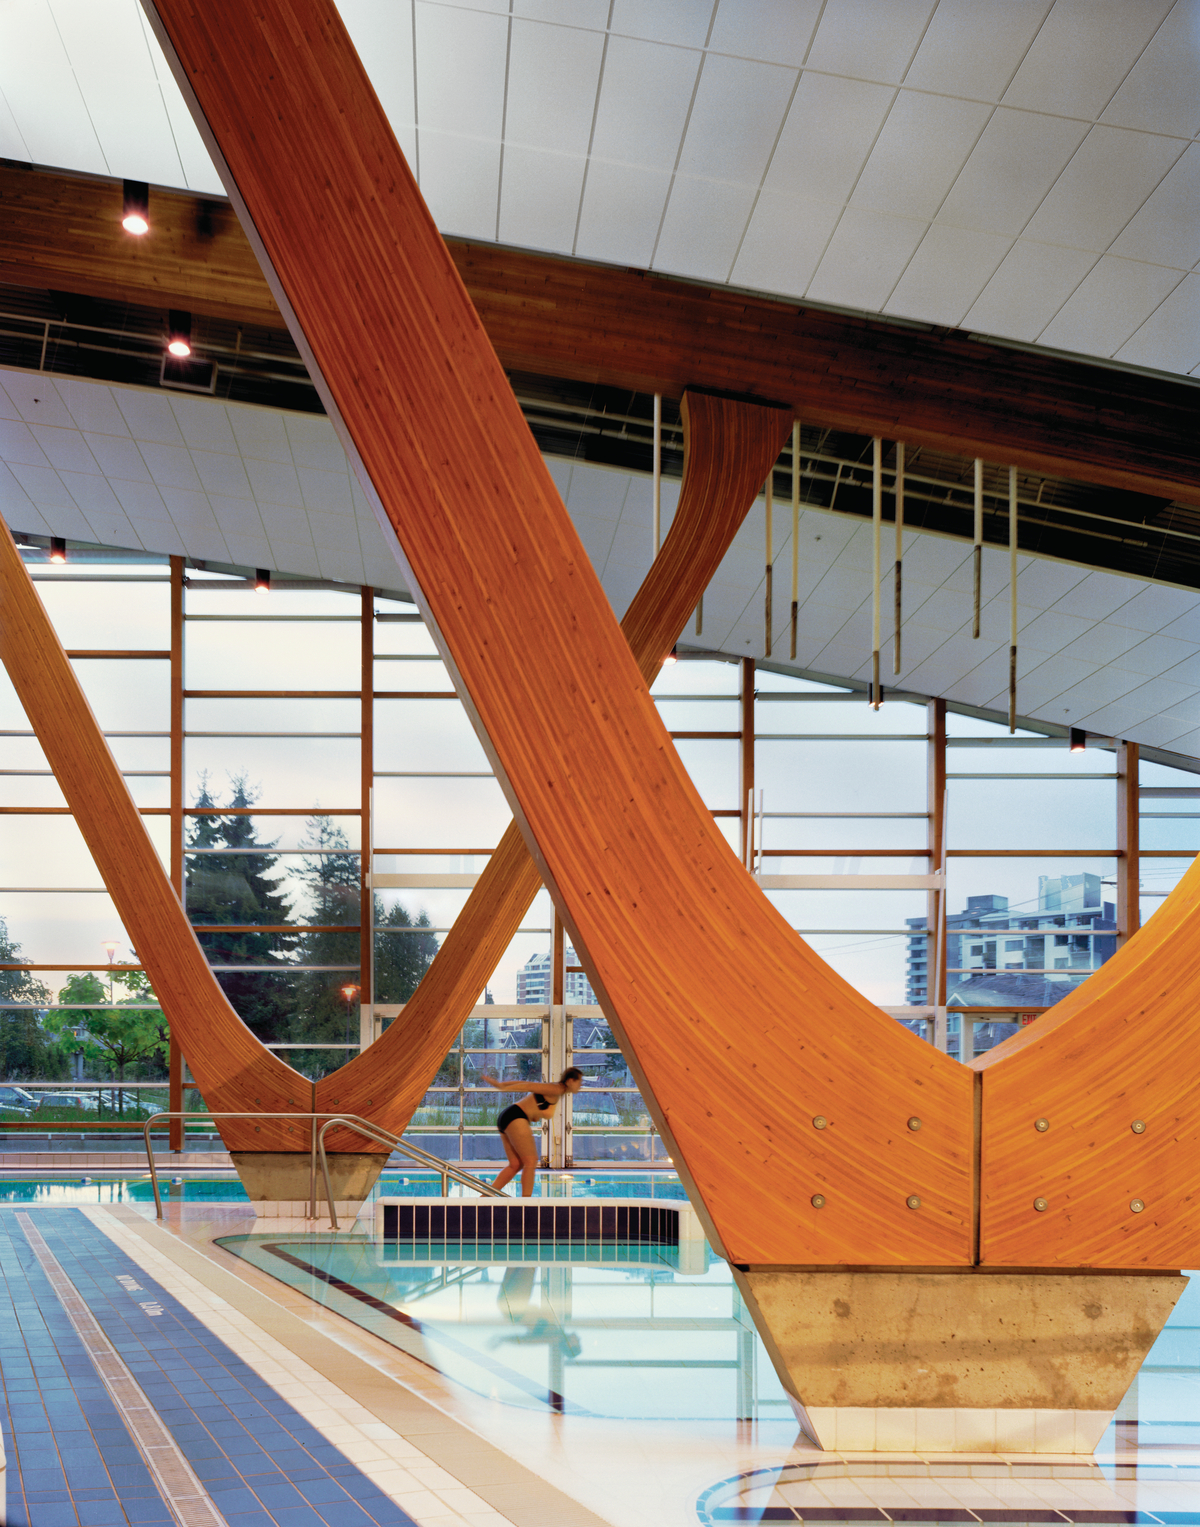 西温哥华水上中心低层建筑的室内日间景观，显示泳池表面、游泳者和弯曲的胶合木(胶合木)柱，其弧线向上支撑胶合木(胶合木)屋顶梁